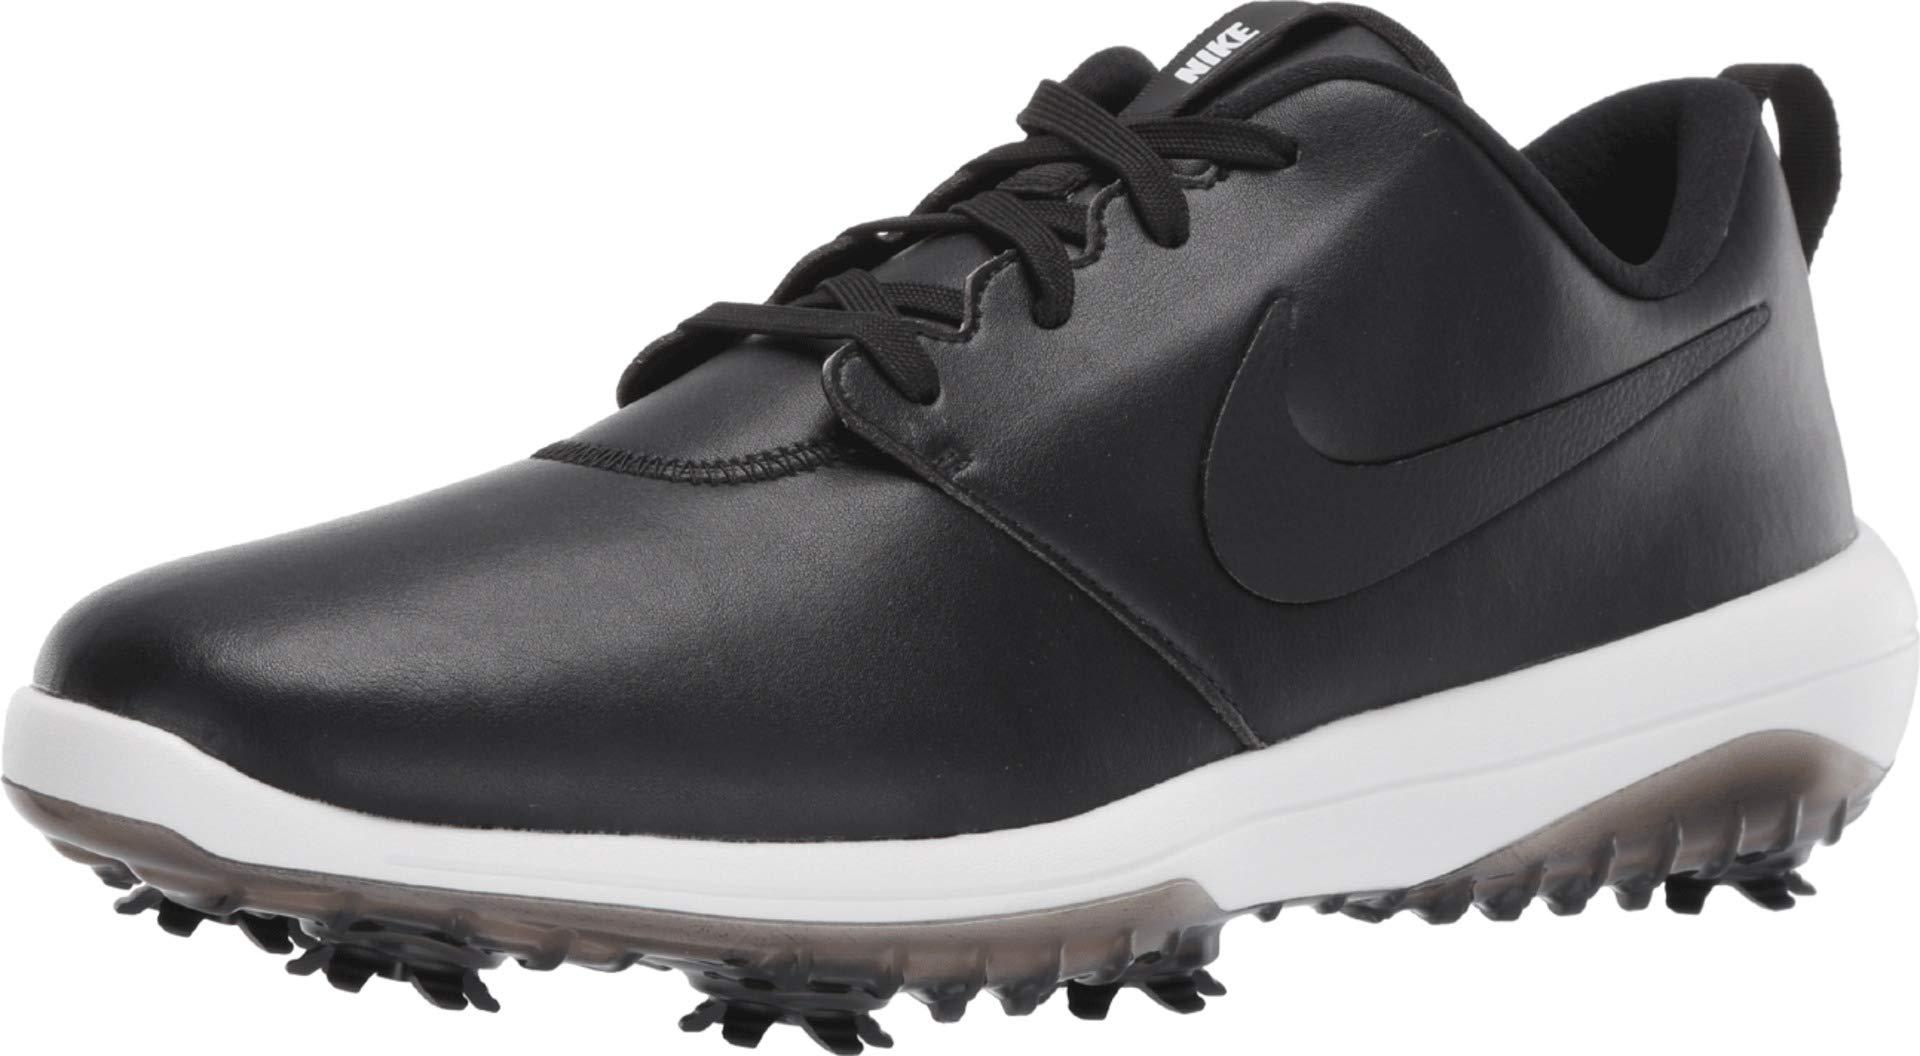 Nike Roshe G Tour Golf Shoe (wide) in Black for Men - Lyst